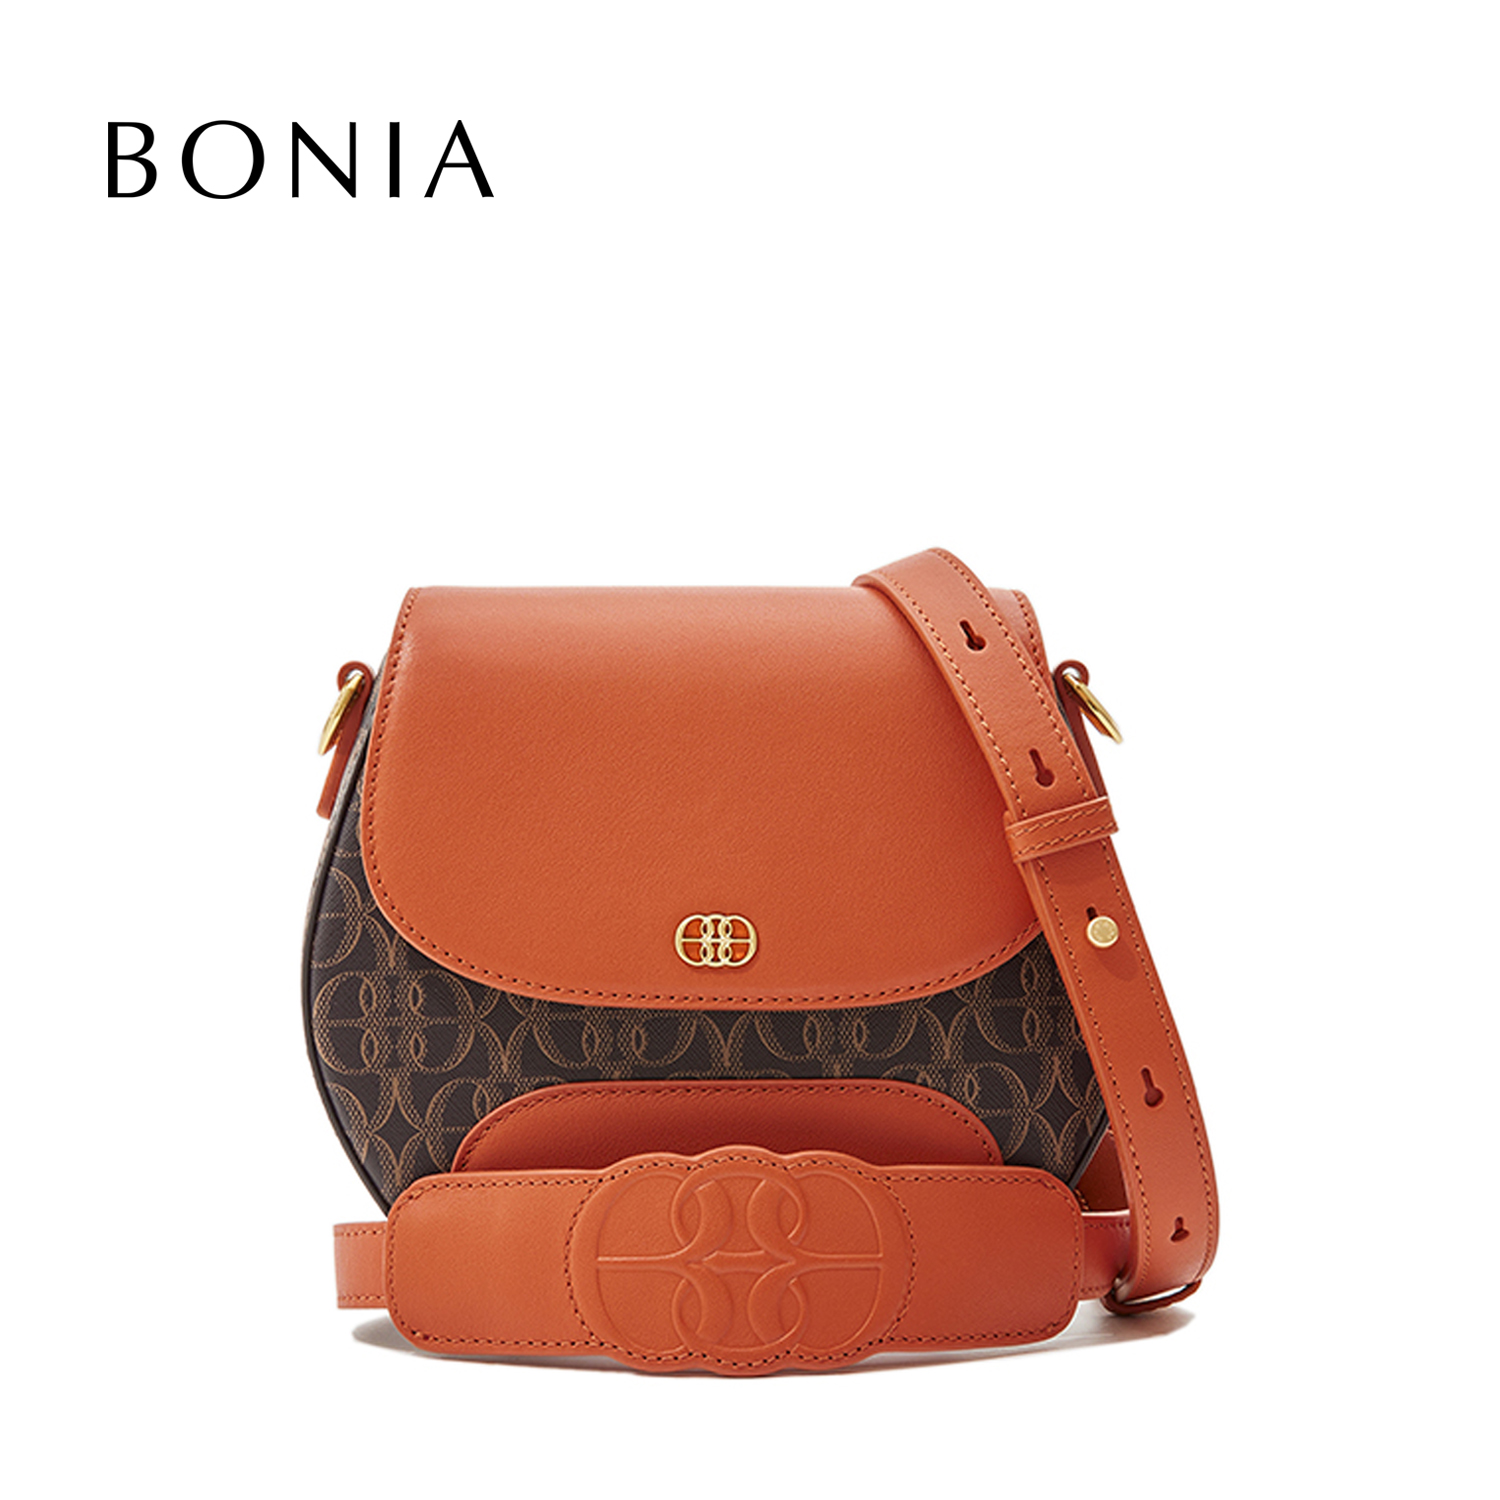 Bonia, Bags, Vintage Bonia Crossbody Bag